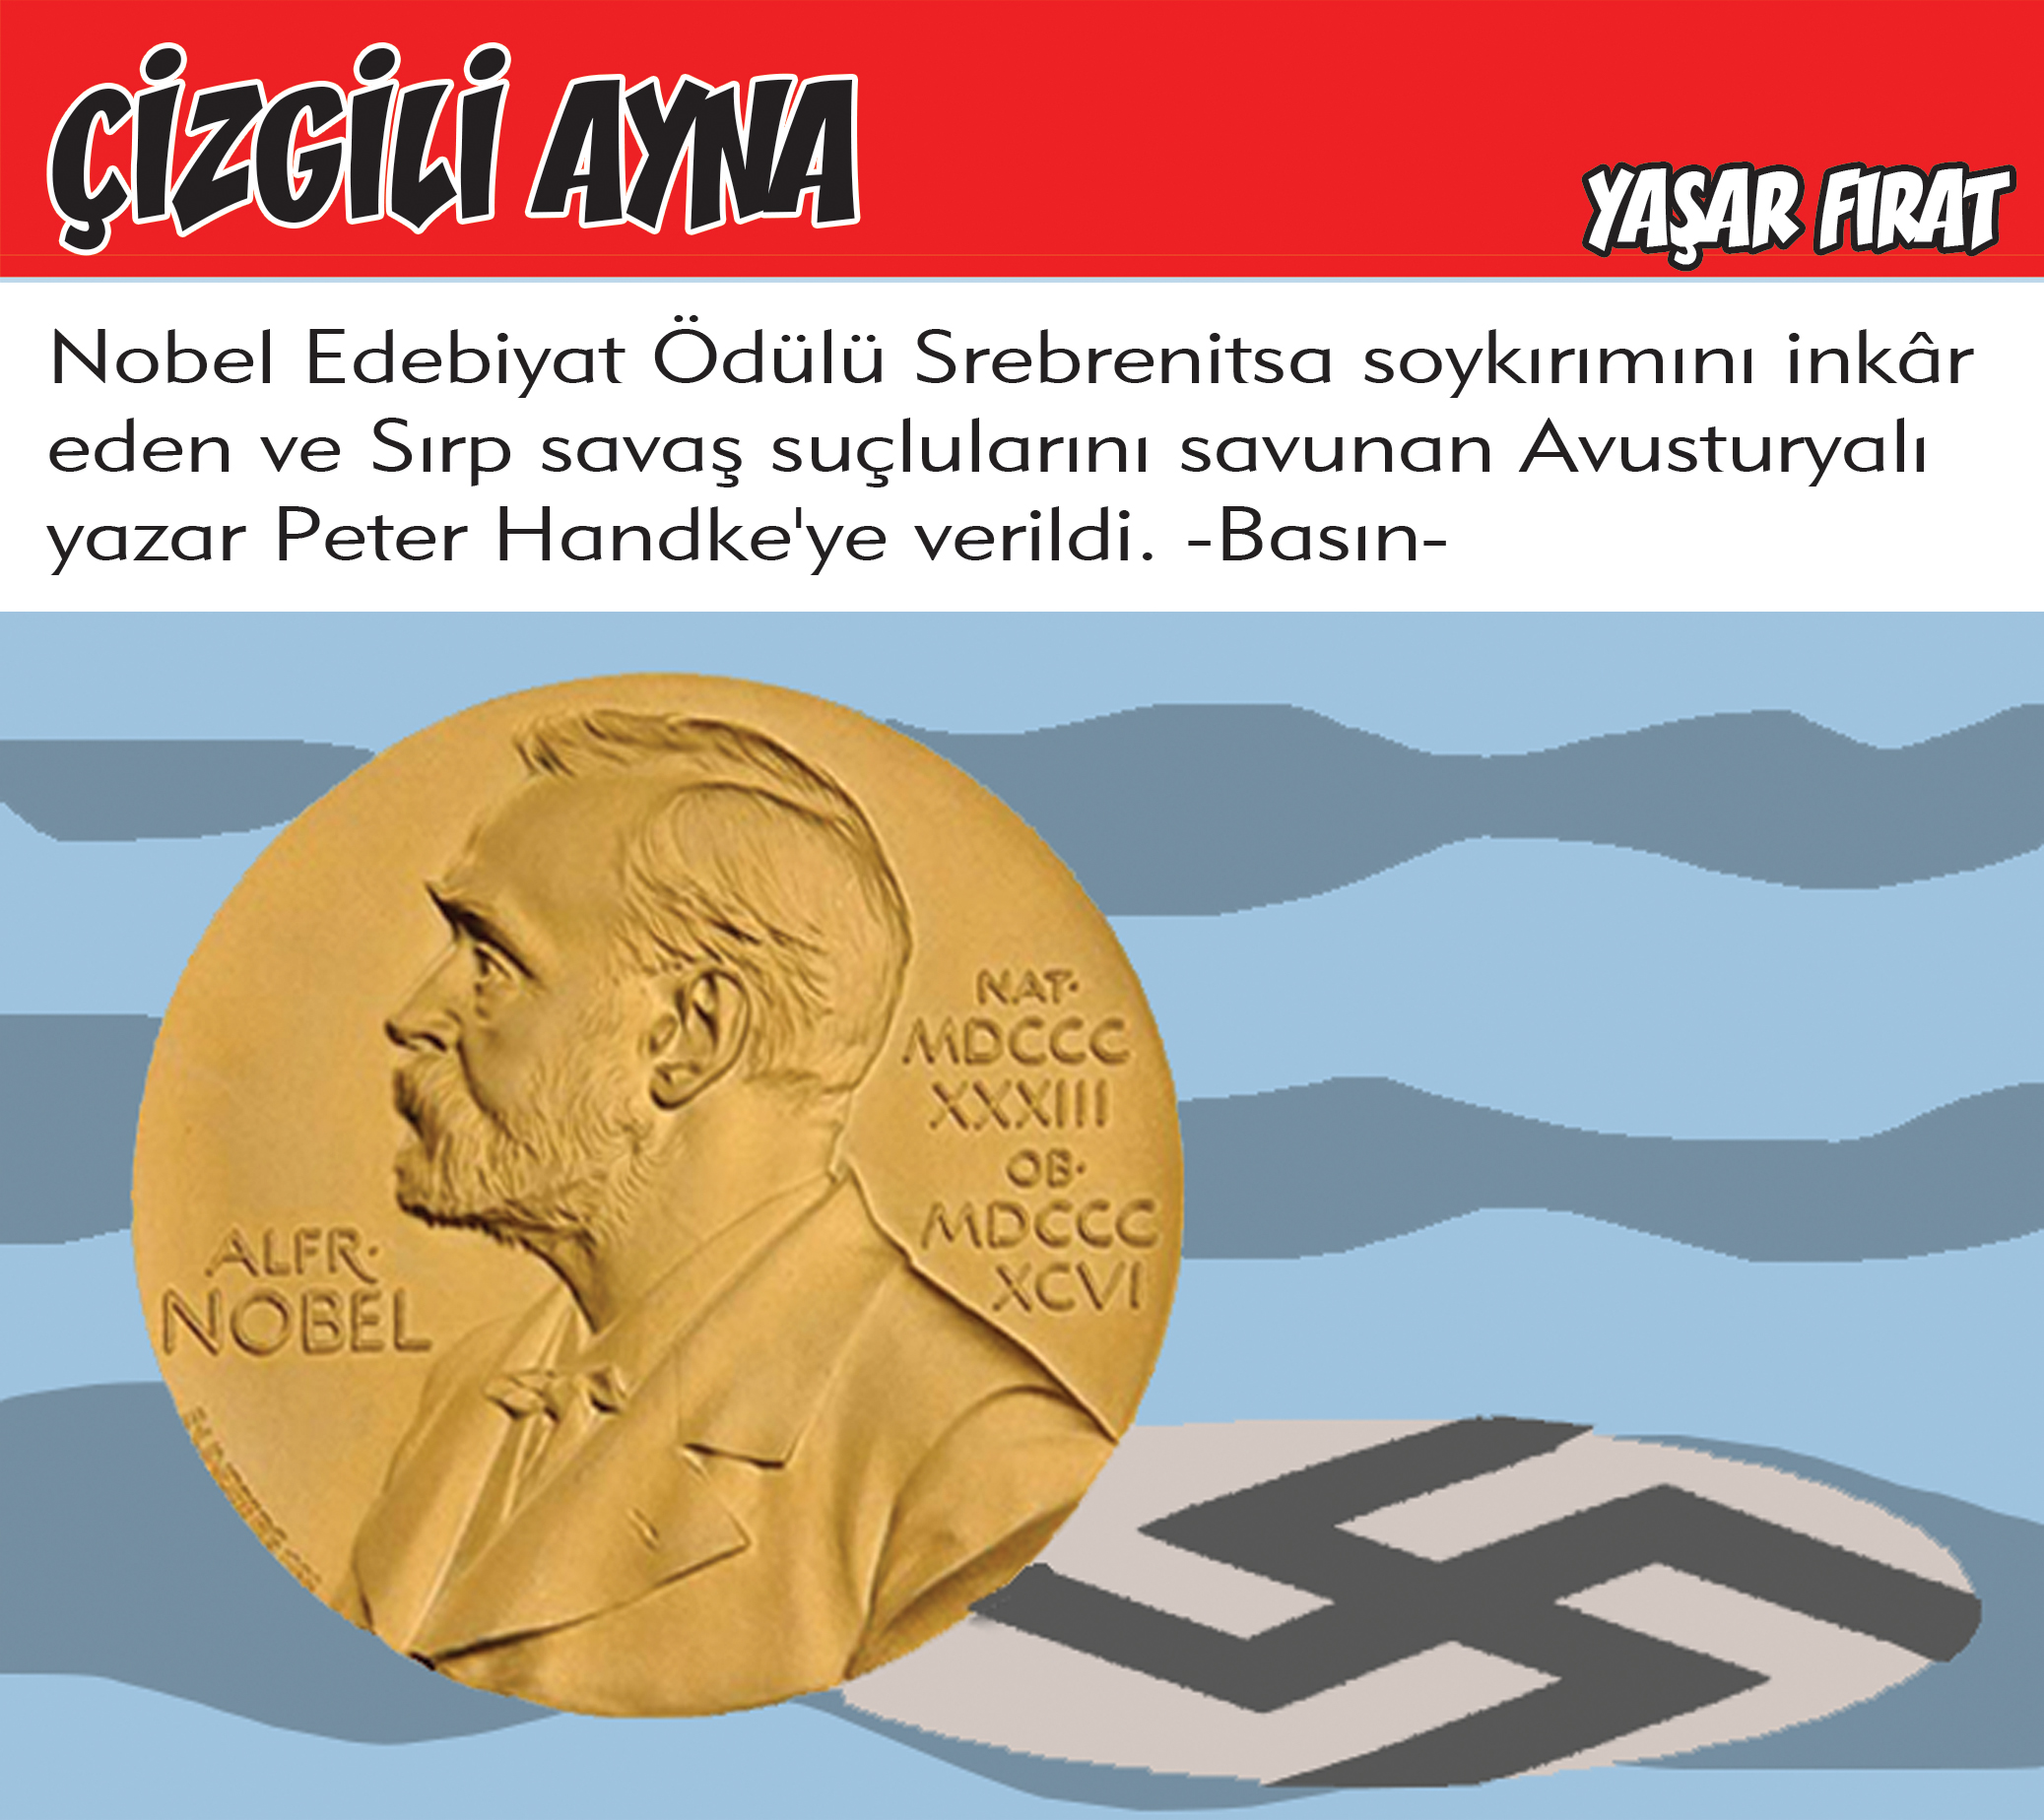 Yaşar Fırat çizdi: Nobel Edebiyat Ödülü